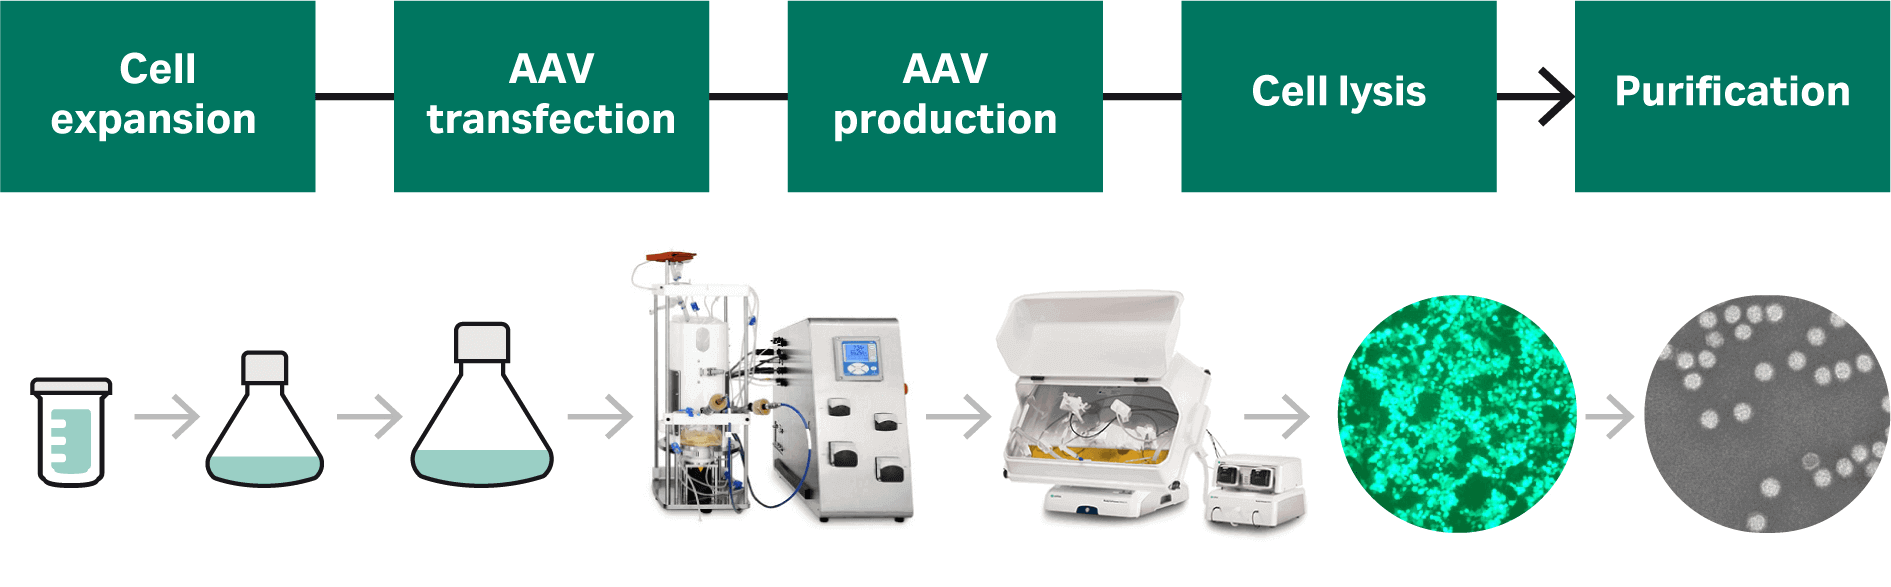 AAV 生产的完整流程包括细胞培养、AAV 转染、AAV 生产、细胞裂解和纯化；我们详细介绍了细胞培养和转染的工艺开发。